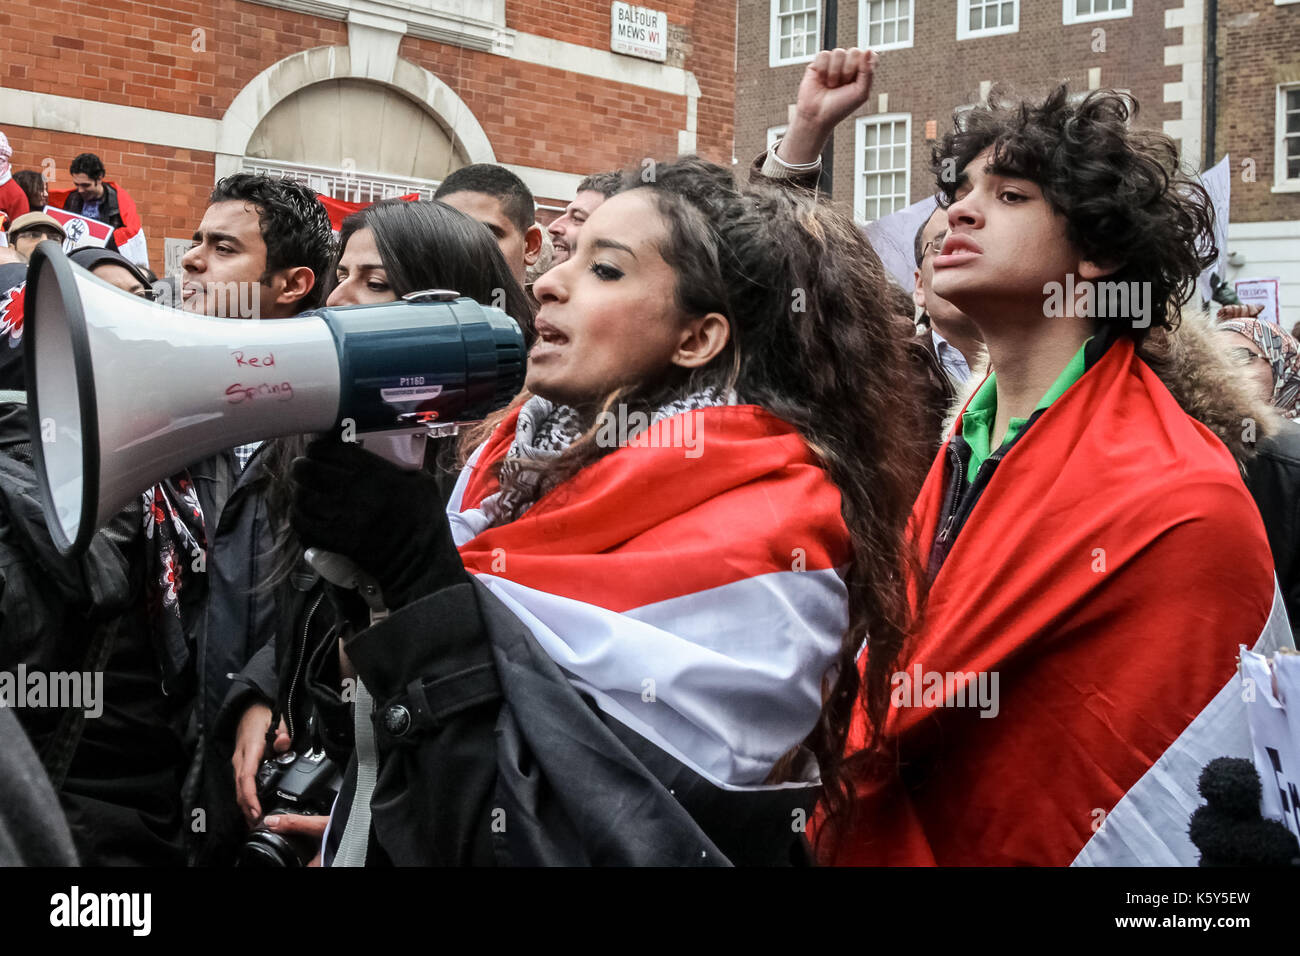 Arrabbiato scene fuori dall'ambasciata egiziana di Londra come centinaia di manifestanti hanno aderito al di fuori invitando il Presidente egiziano Hosni Mubarak al passo verso il basso. Foto Stock